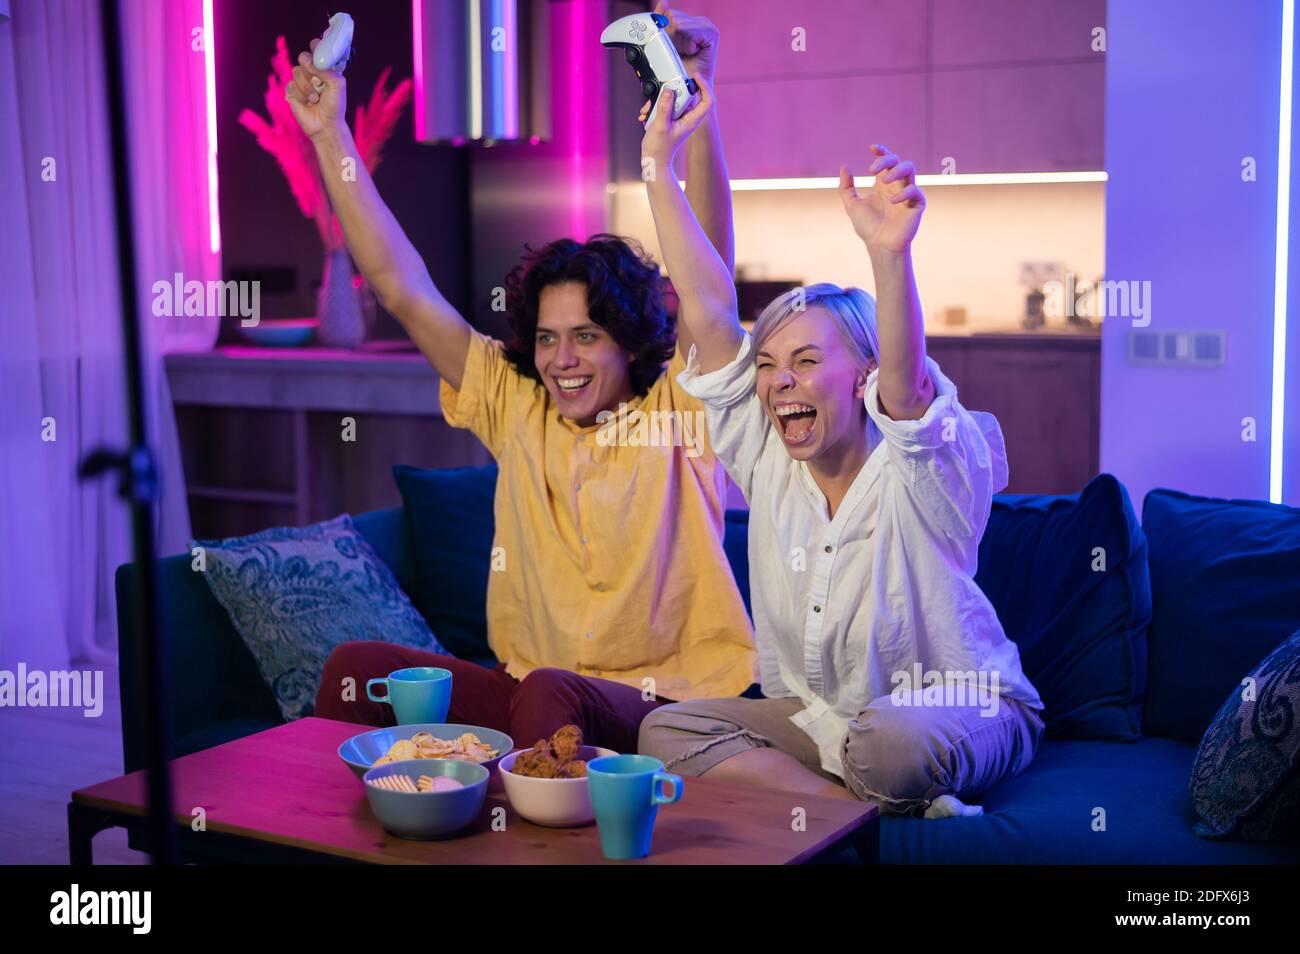 Lächelndes Paar hält Gamepads spielen Videospiel zu Hause. Low-Angle-Aufnahme junger Menschen, die während der Selbstisolation gegen Pandemie Zeit miteinander verbringen. Stockfoto